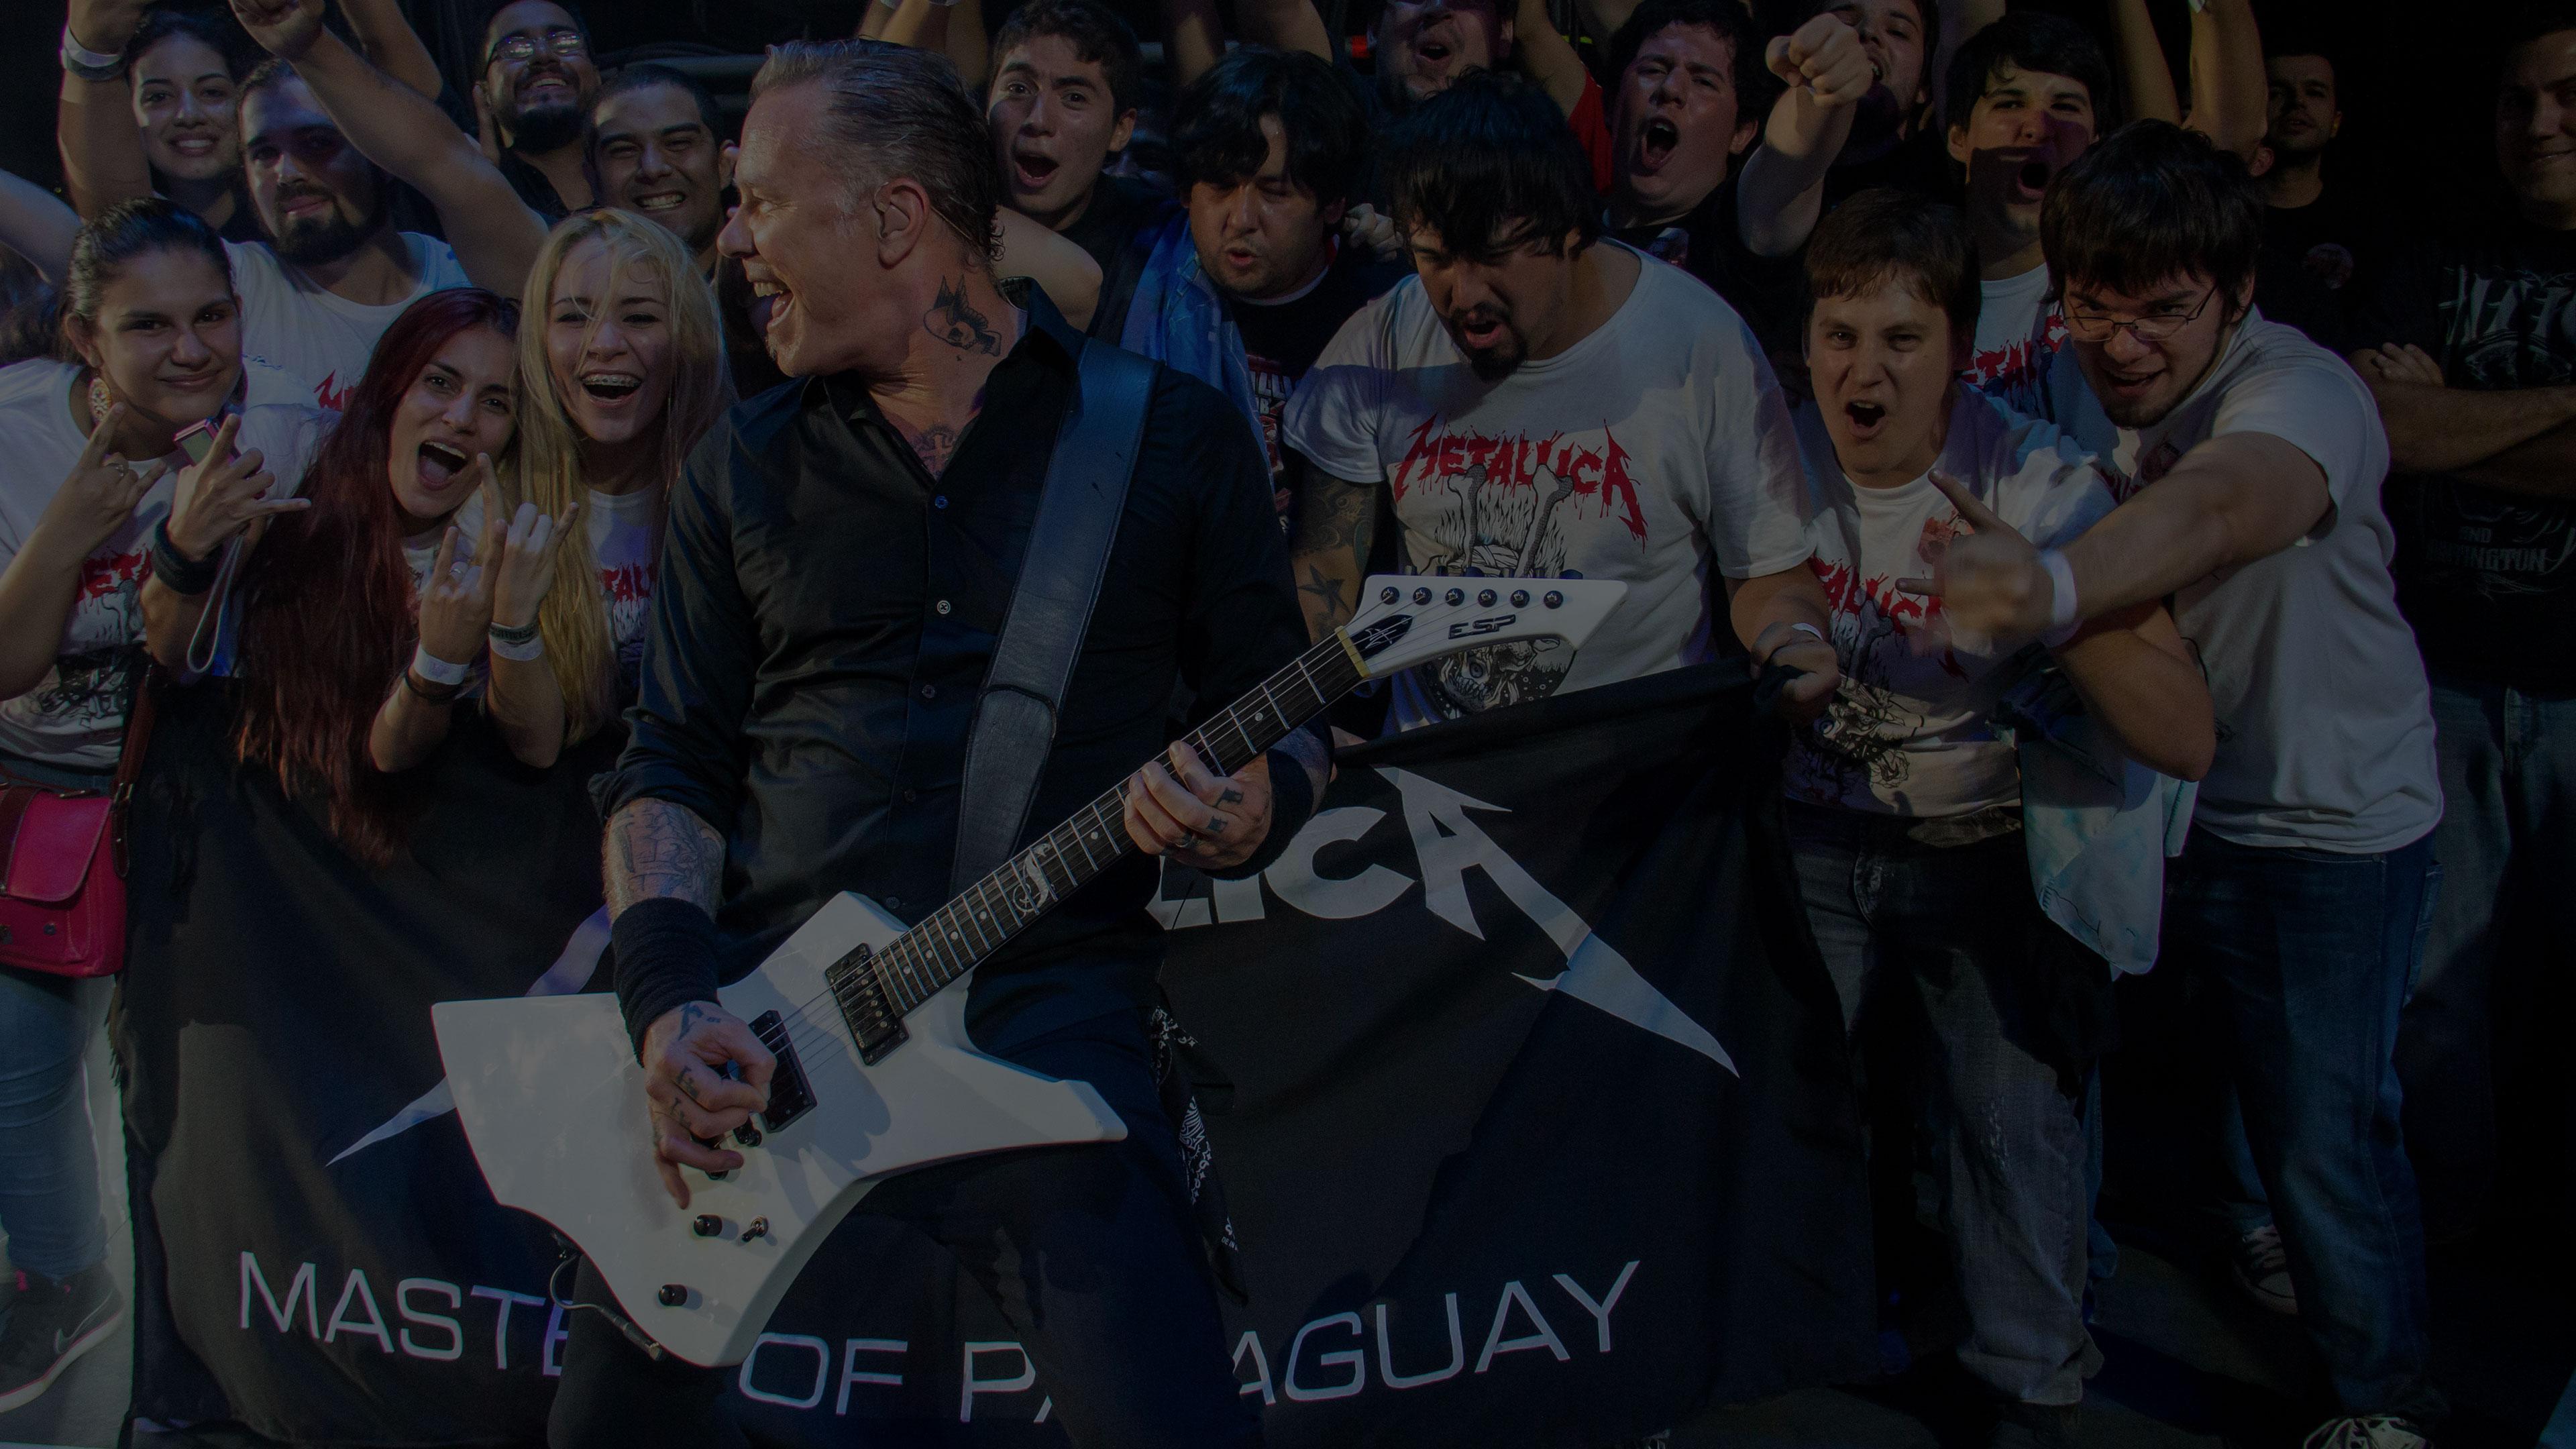 Metallica at Jockey Club in Asunción, Paraguay on March 24, 2014